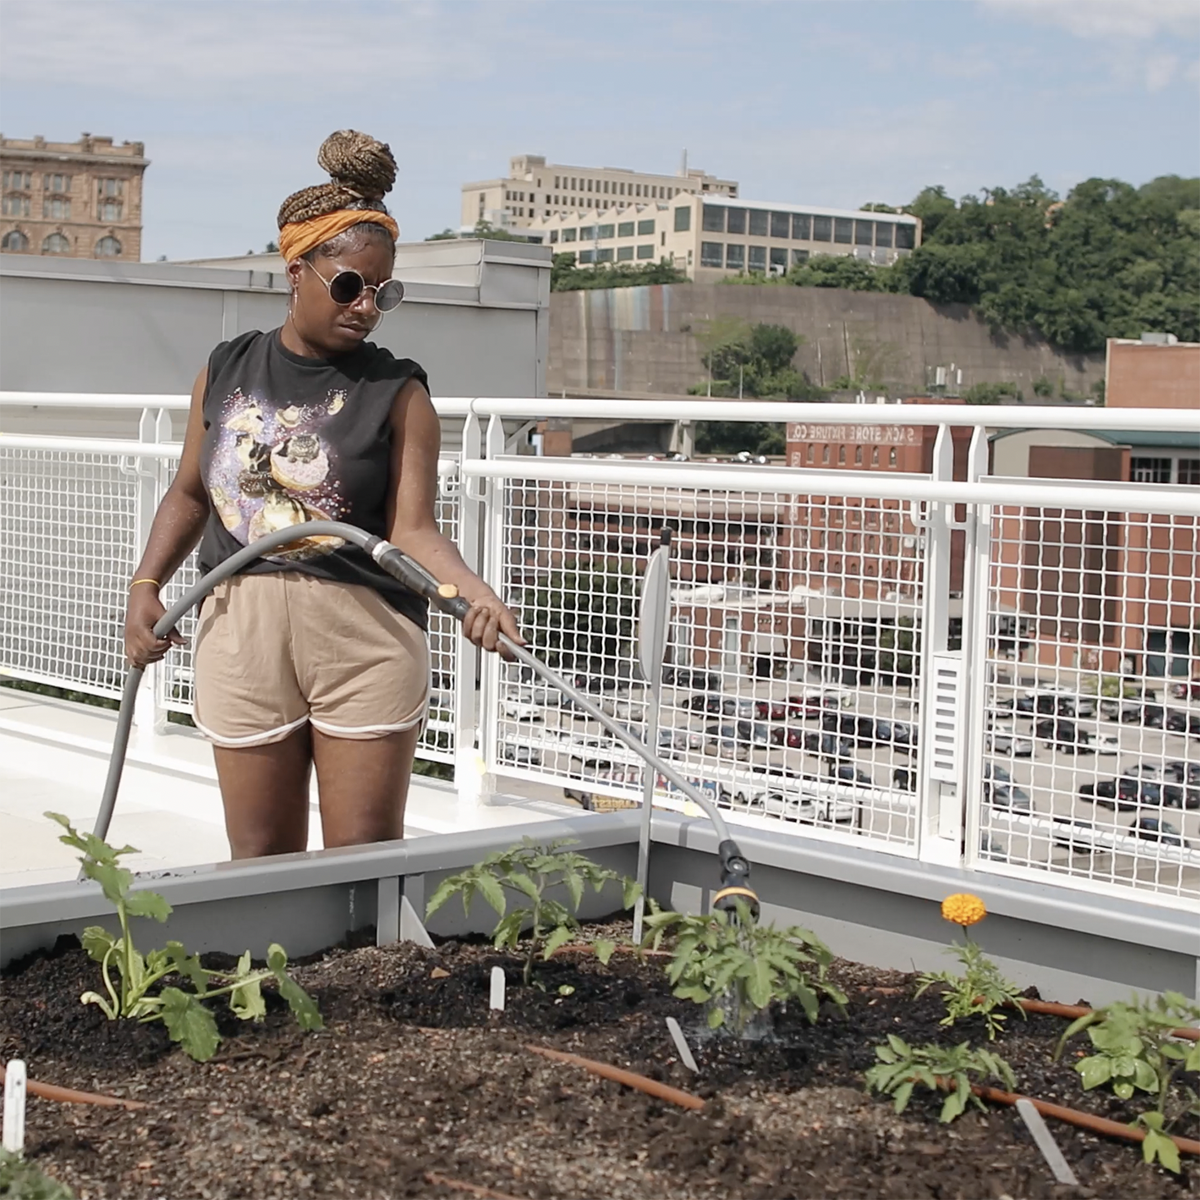 图为一名学生拿着软管在屋顶花园浇灌一个长满植物的花园床